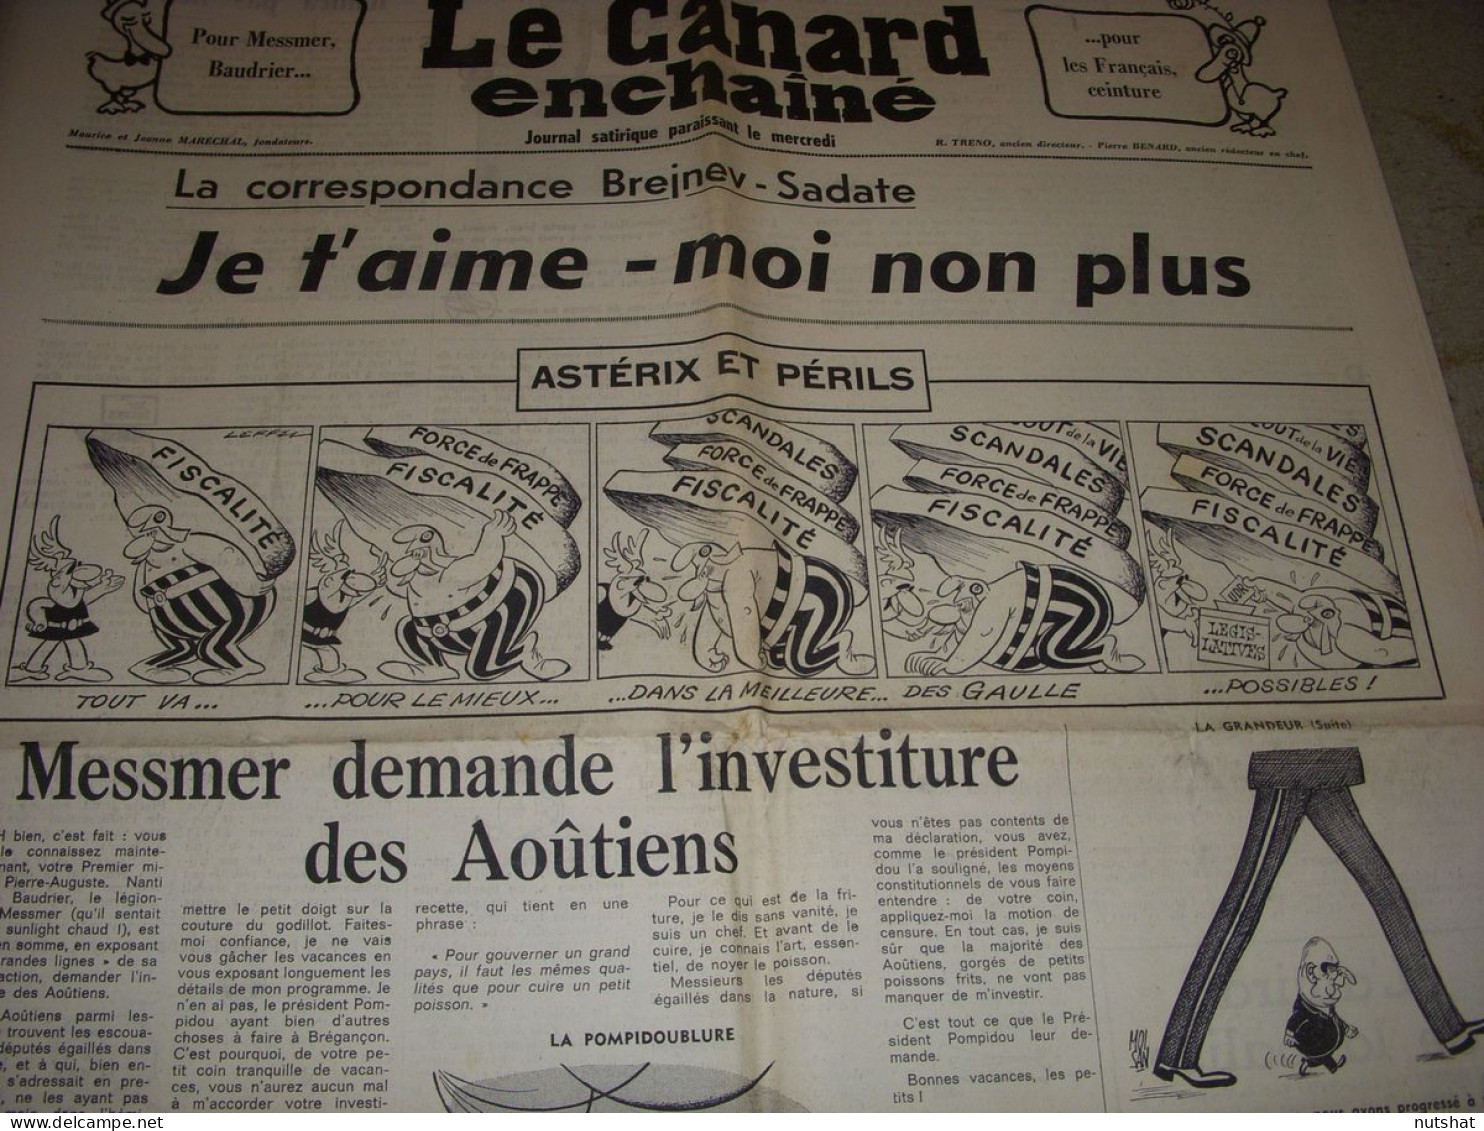 CANARD ENCHAINE 2702 09.08.1972 DW LAURENCE Robert ALTMANN ASTERIX Et PERILS - Politics